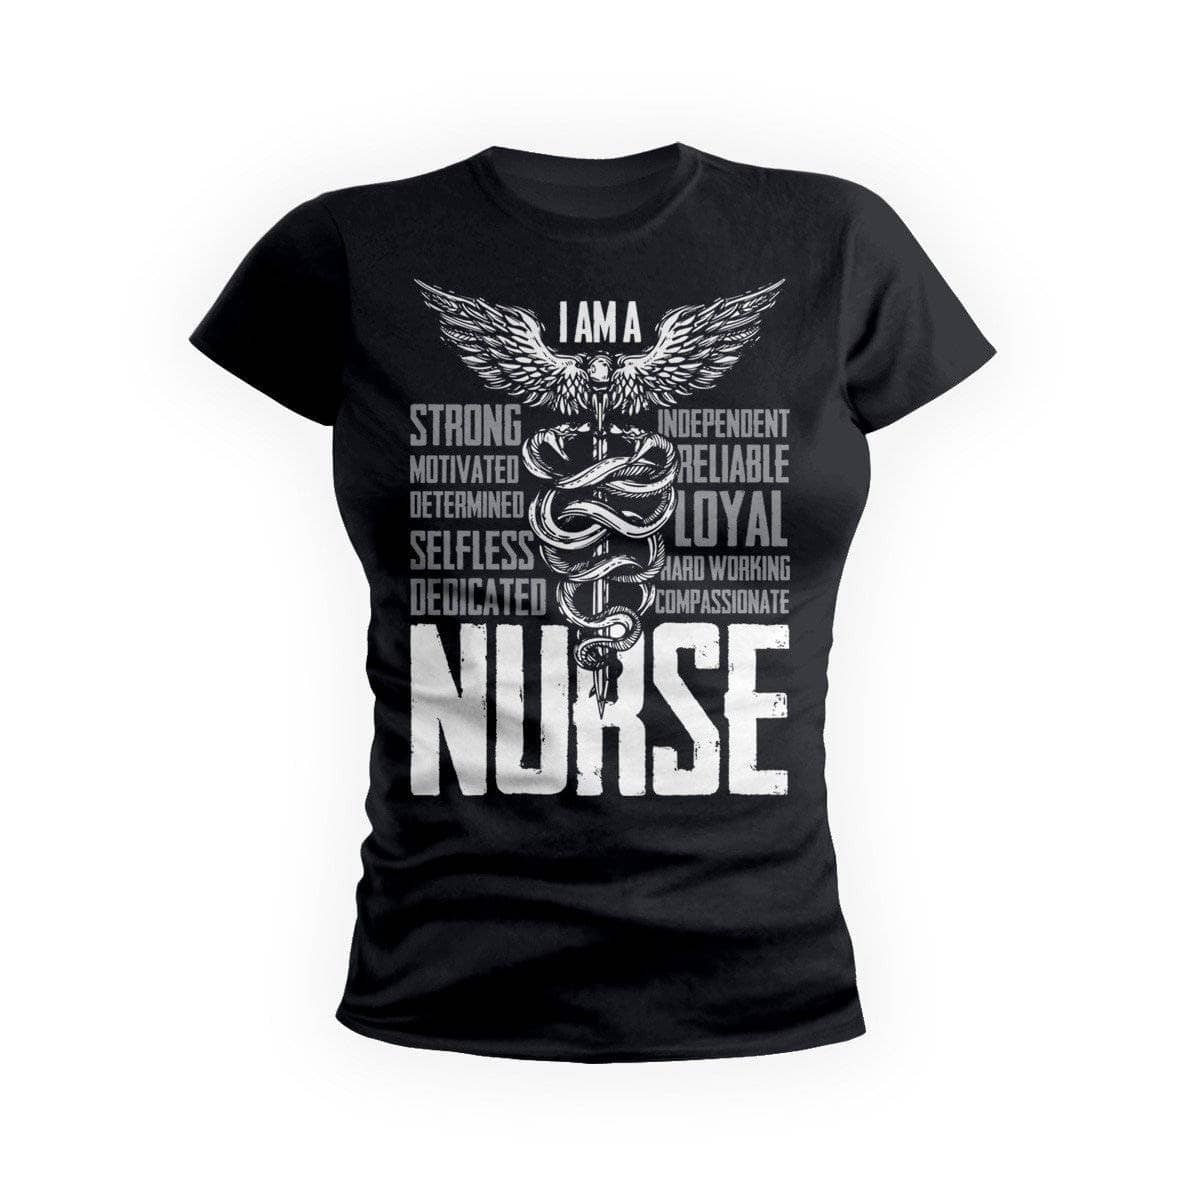 I'M A Nurse